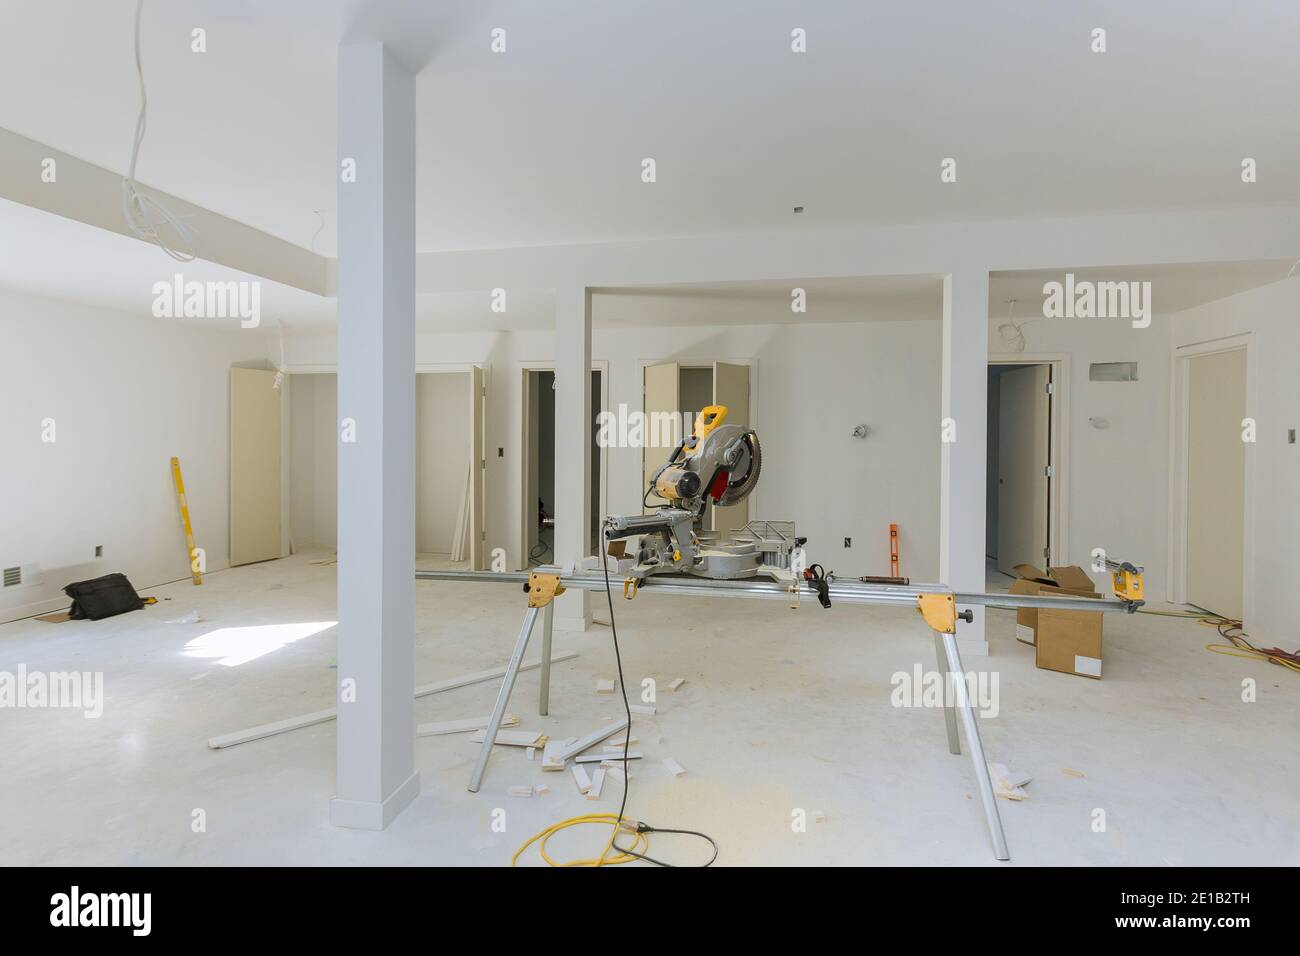 Home Verbesserung auf Kreissäge schneiden für neue Hausbau Details zur Inneneinrichtung Stockfoto